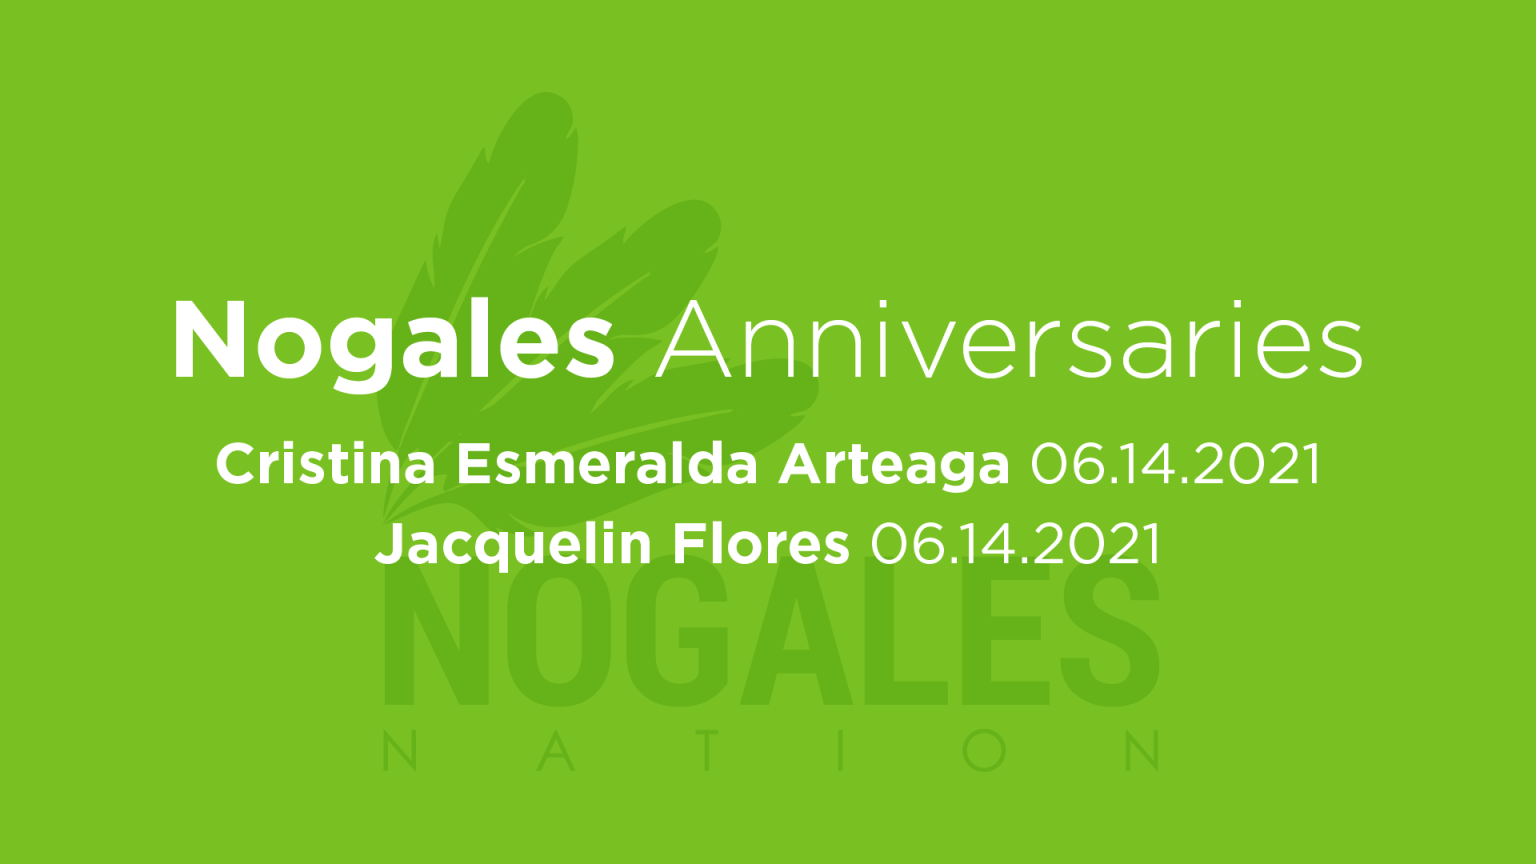 Nogales (1)